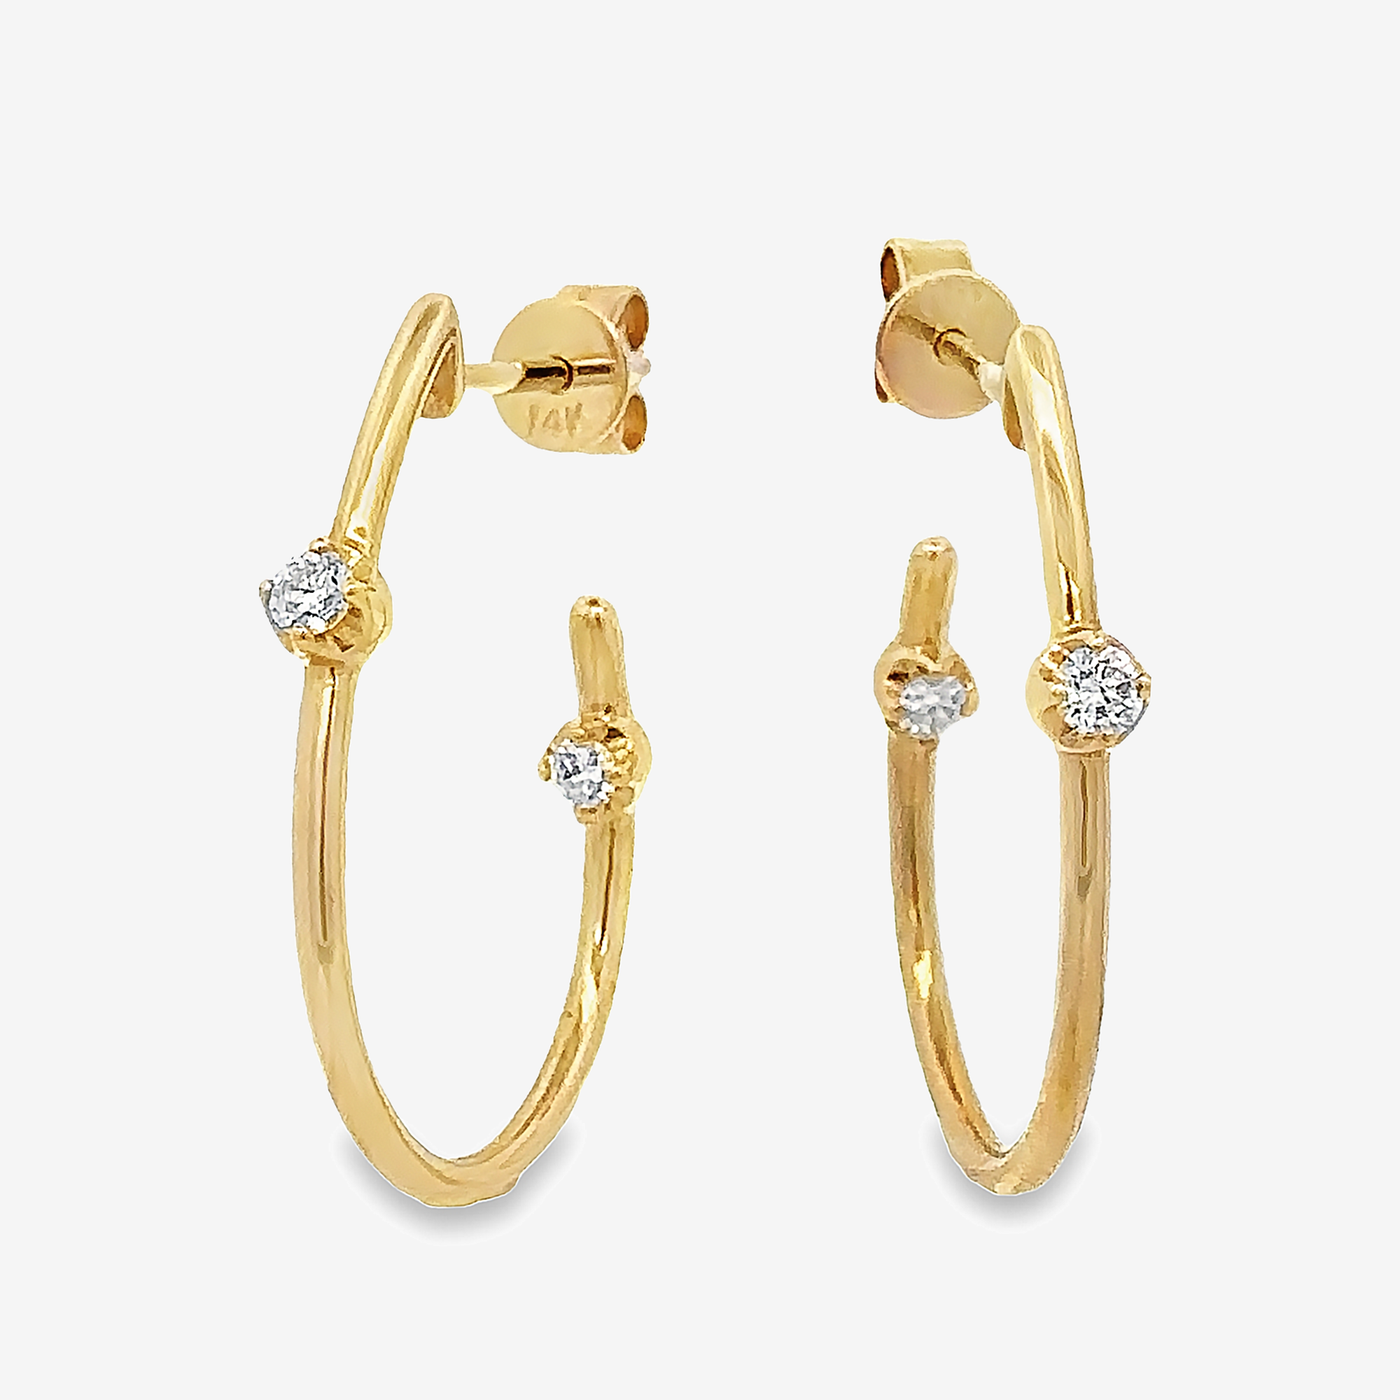 J hoop earrings with round diamonds